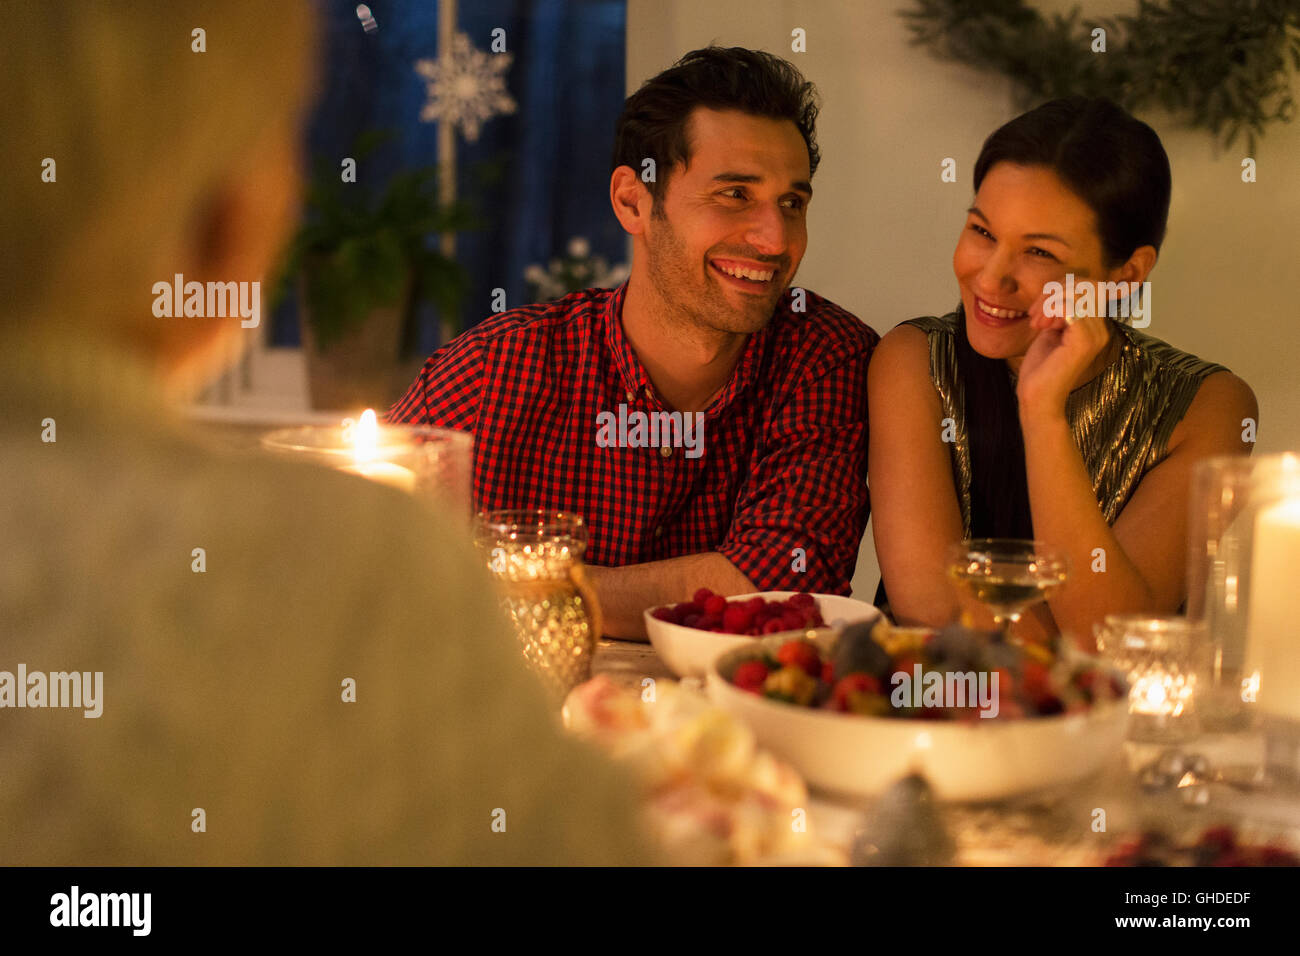 Smiling couple enjoying candlelight Christmas dinner Stock Photo